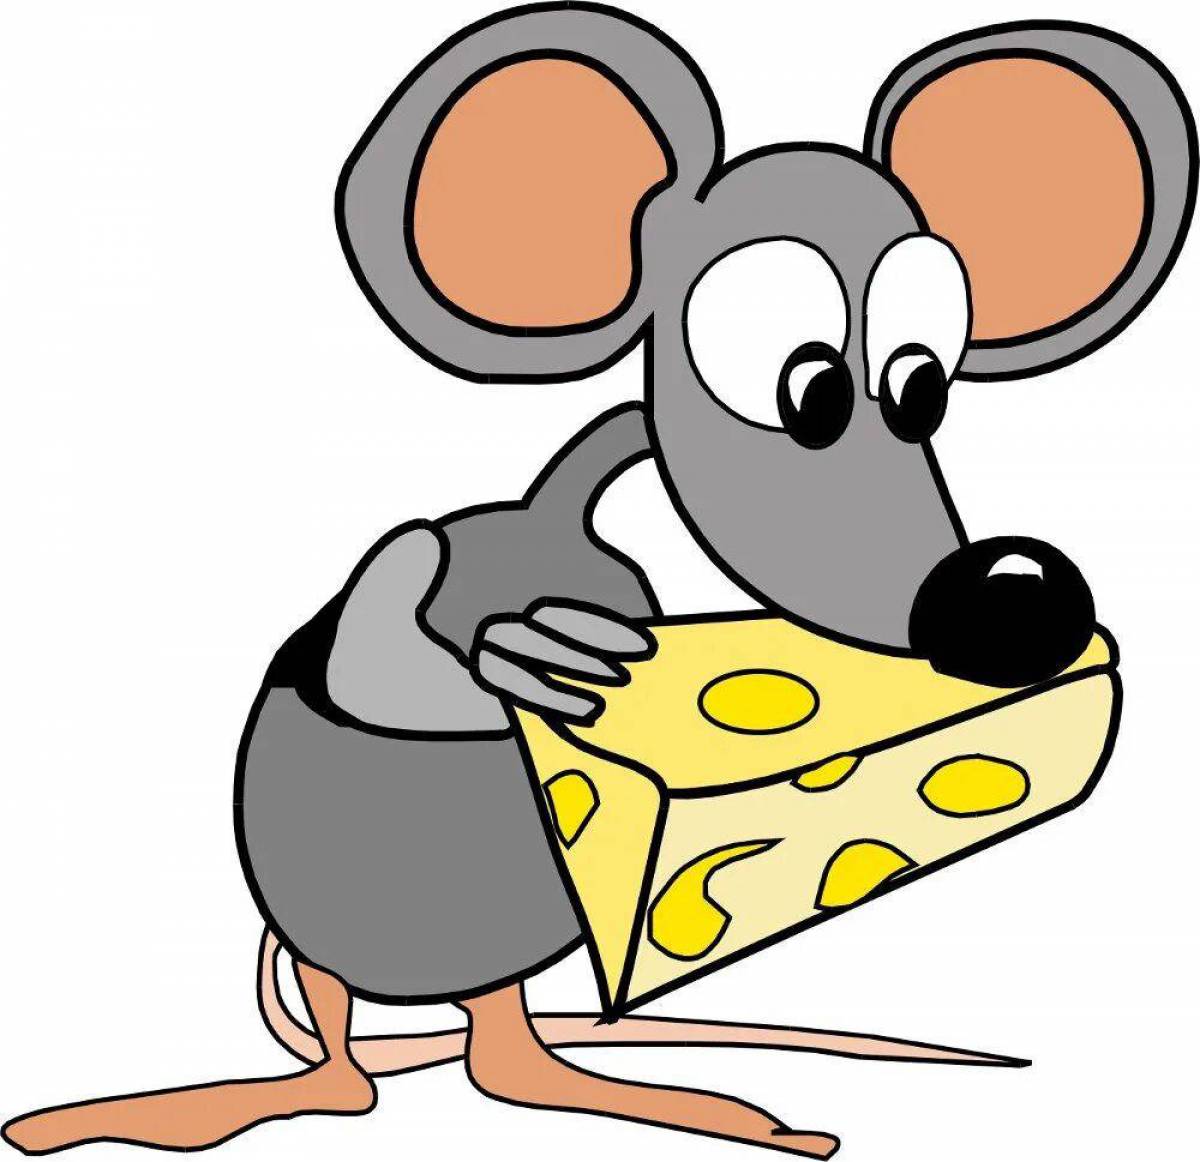 Мышка с сыром #3